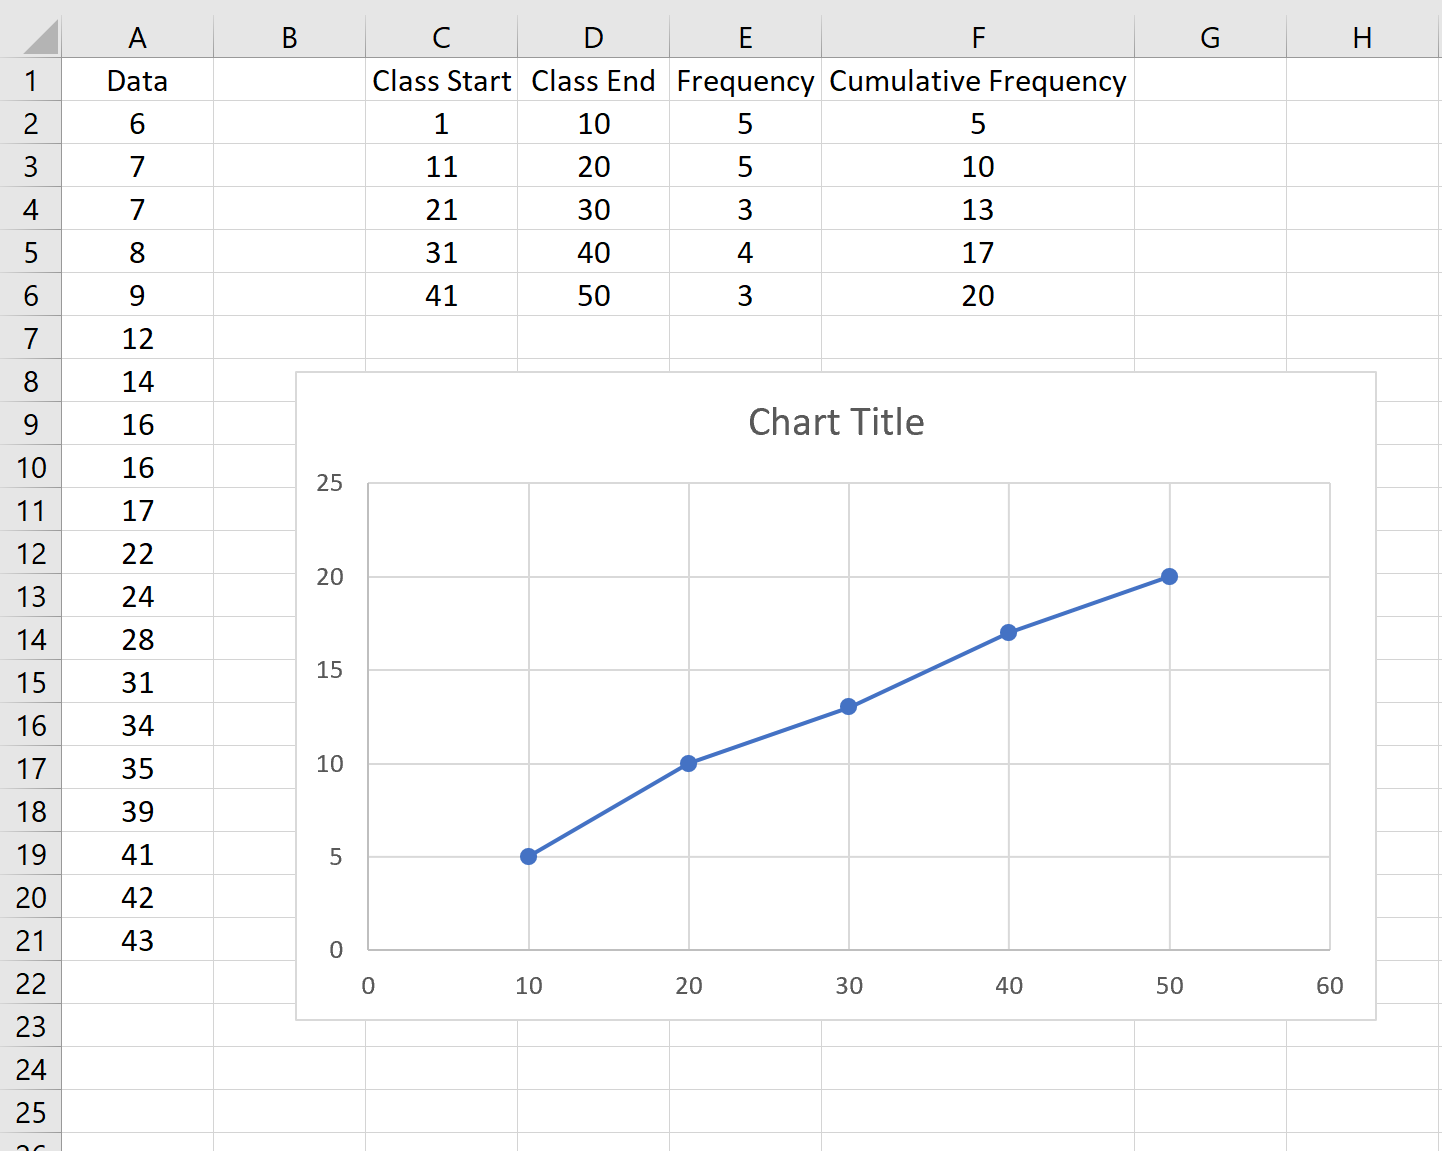 Grafico della testata in Excel